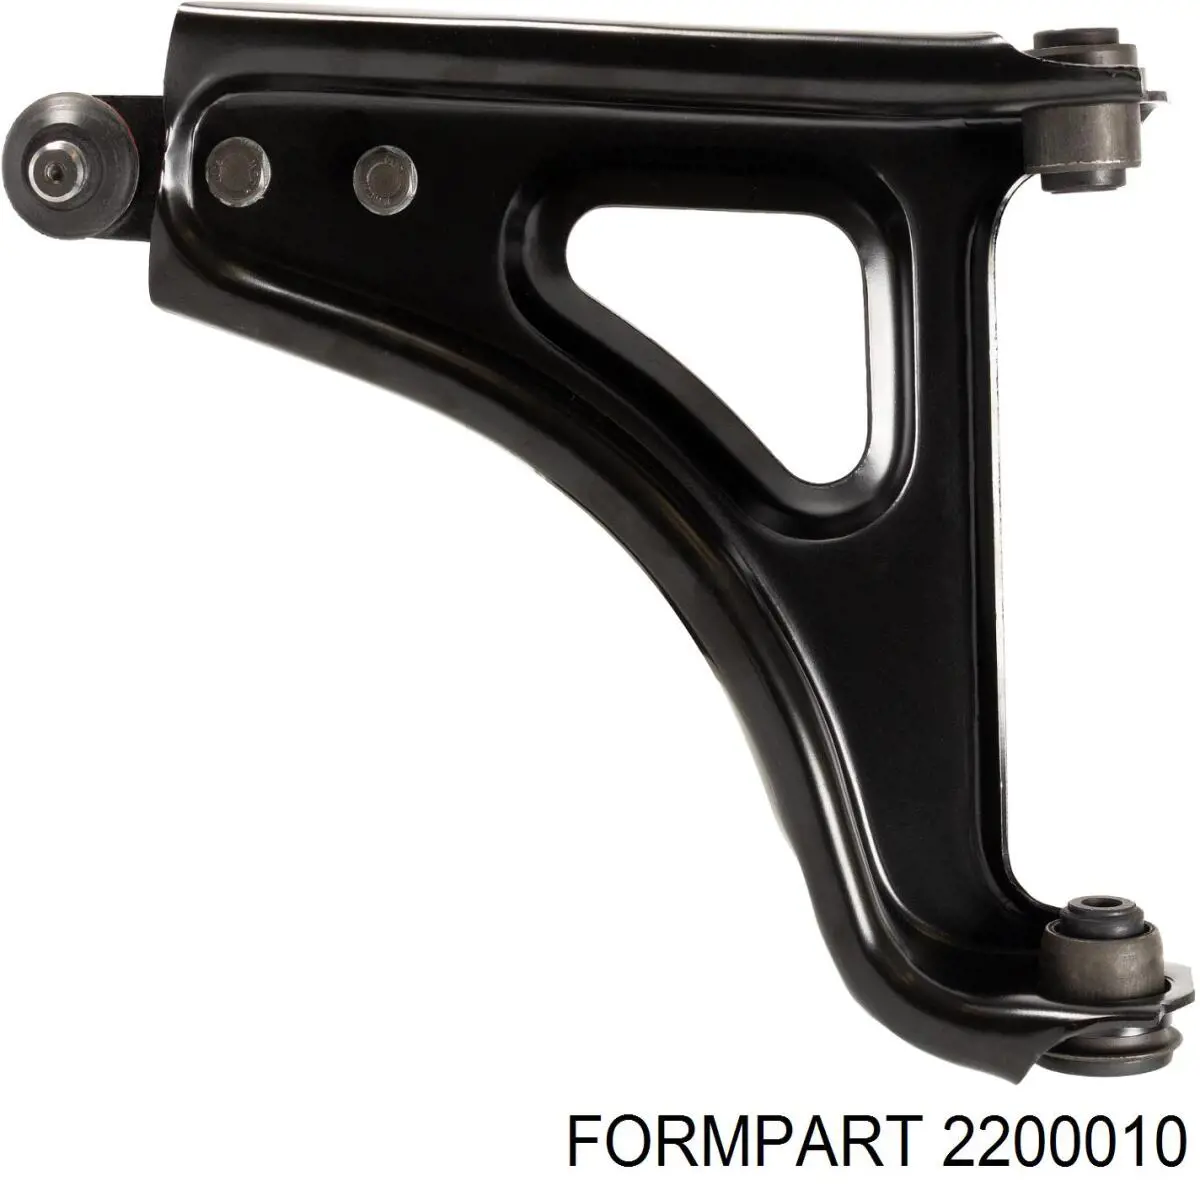 2200010 Formpart/Otoform silentblock de suspensión delantero inferior